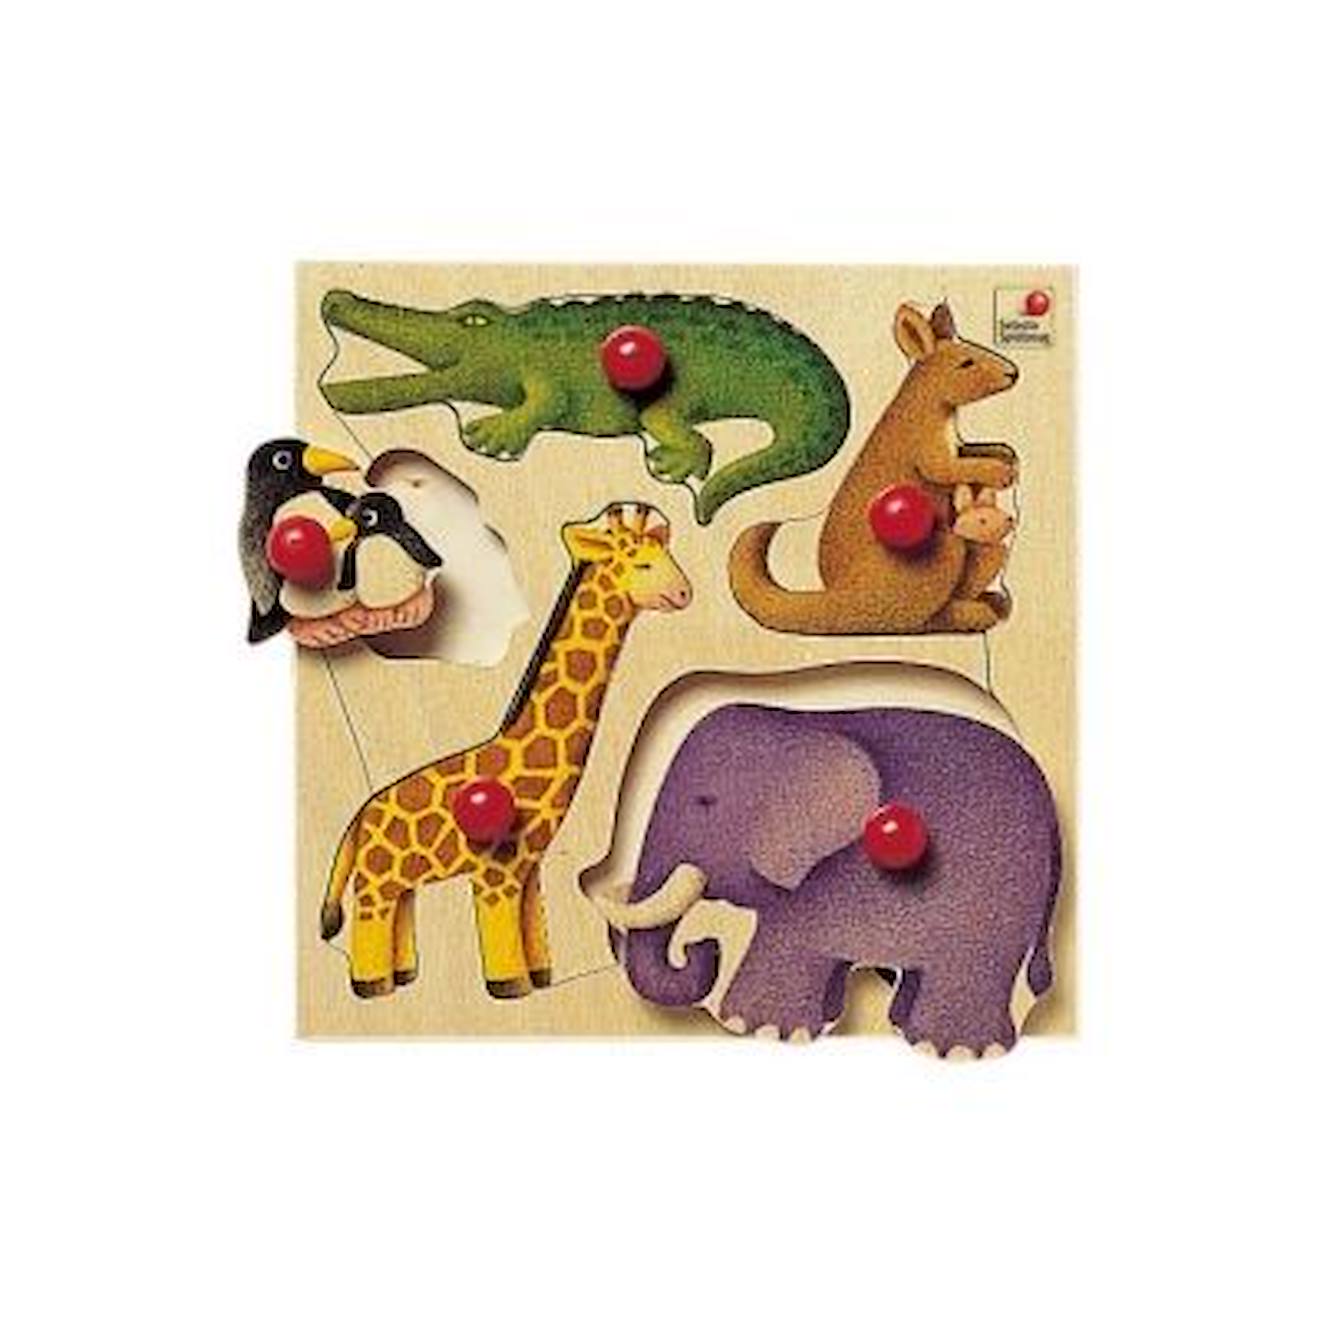 Jeu D'encastrement Zoo - Selecta - 5 Pièces - Pour Enfants De 18 Mois Et Plus - Multicolore Beige